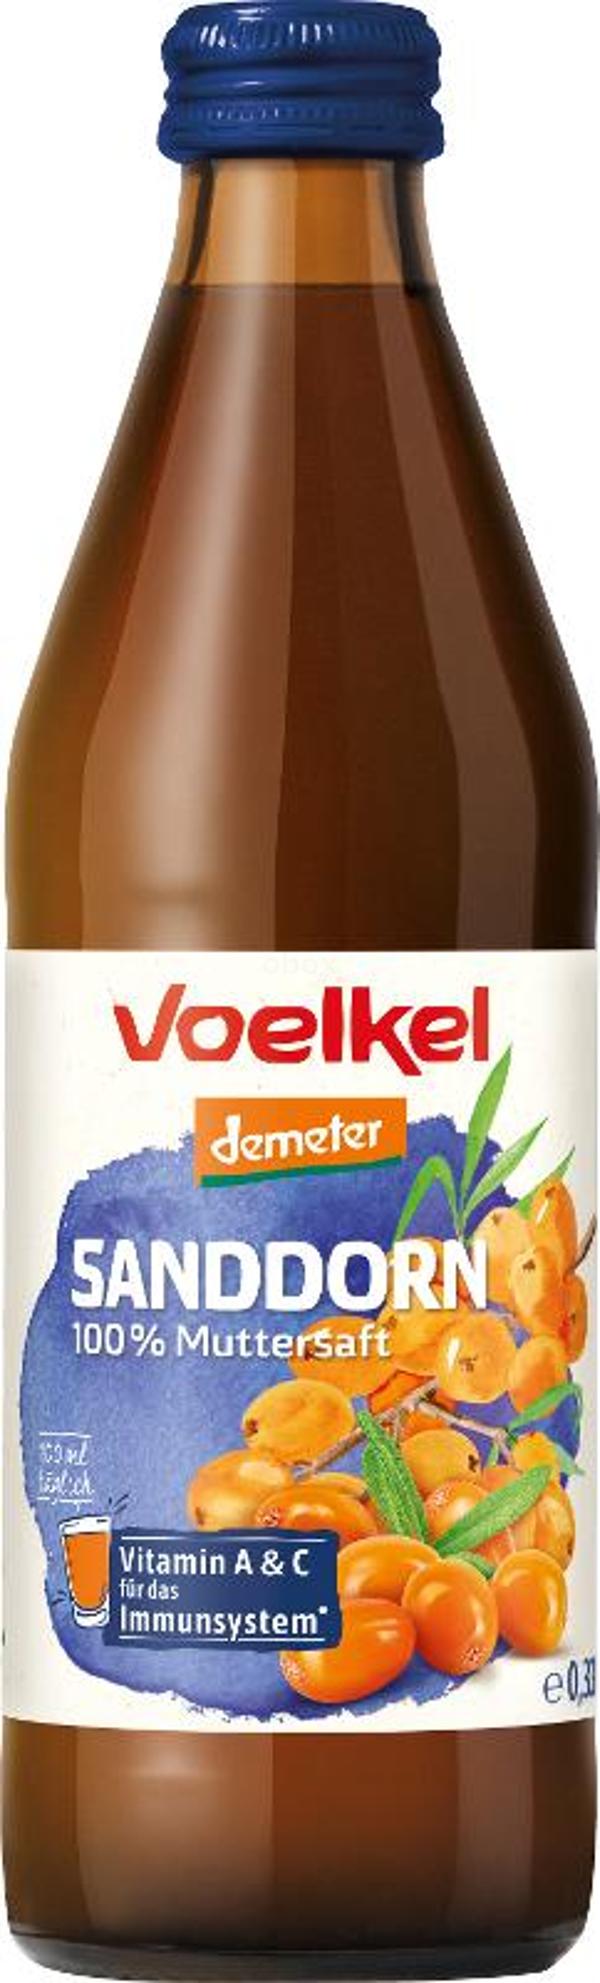 Produktfoto zu Voelkel Sanddorn Muttersaft - 0,33l